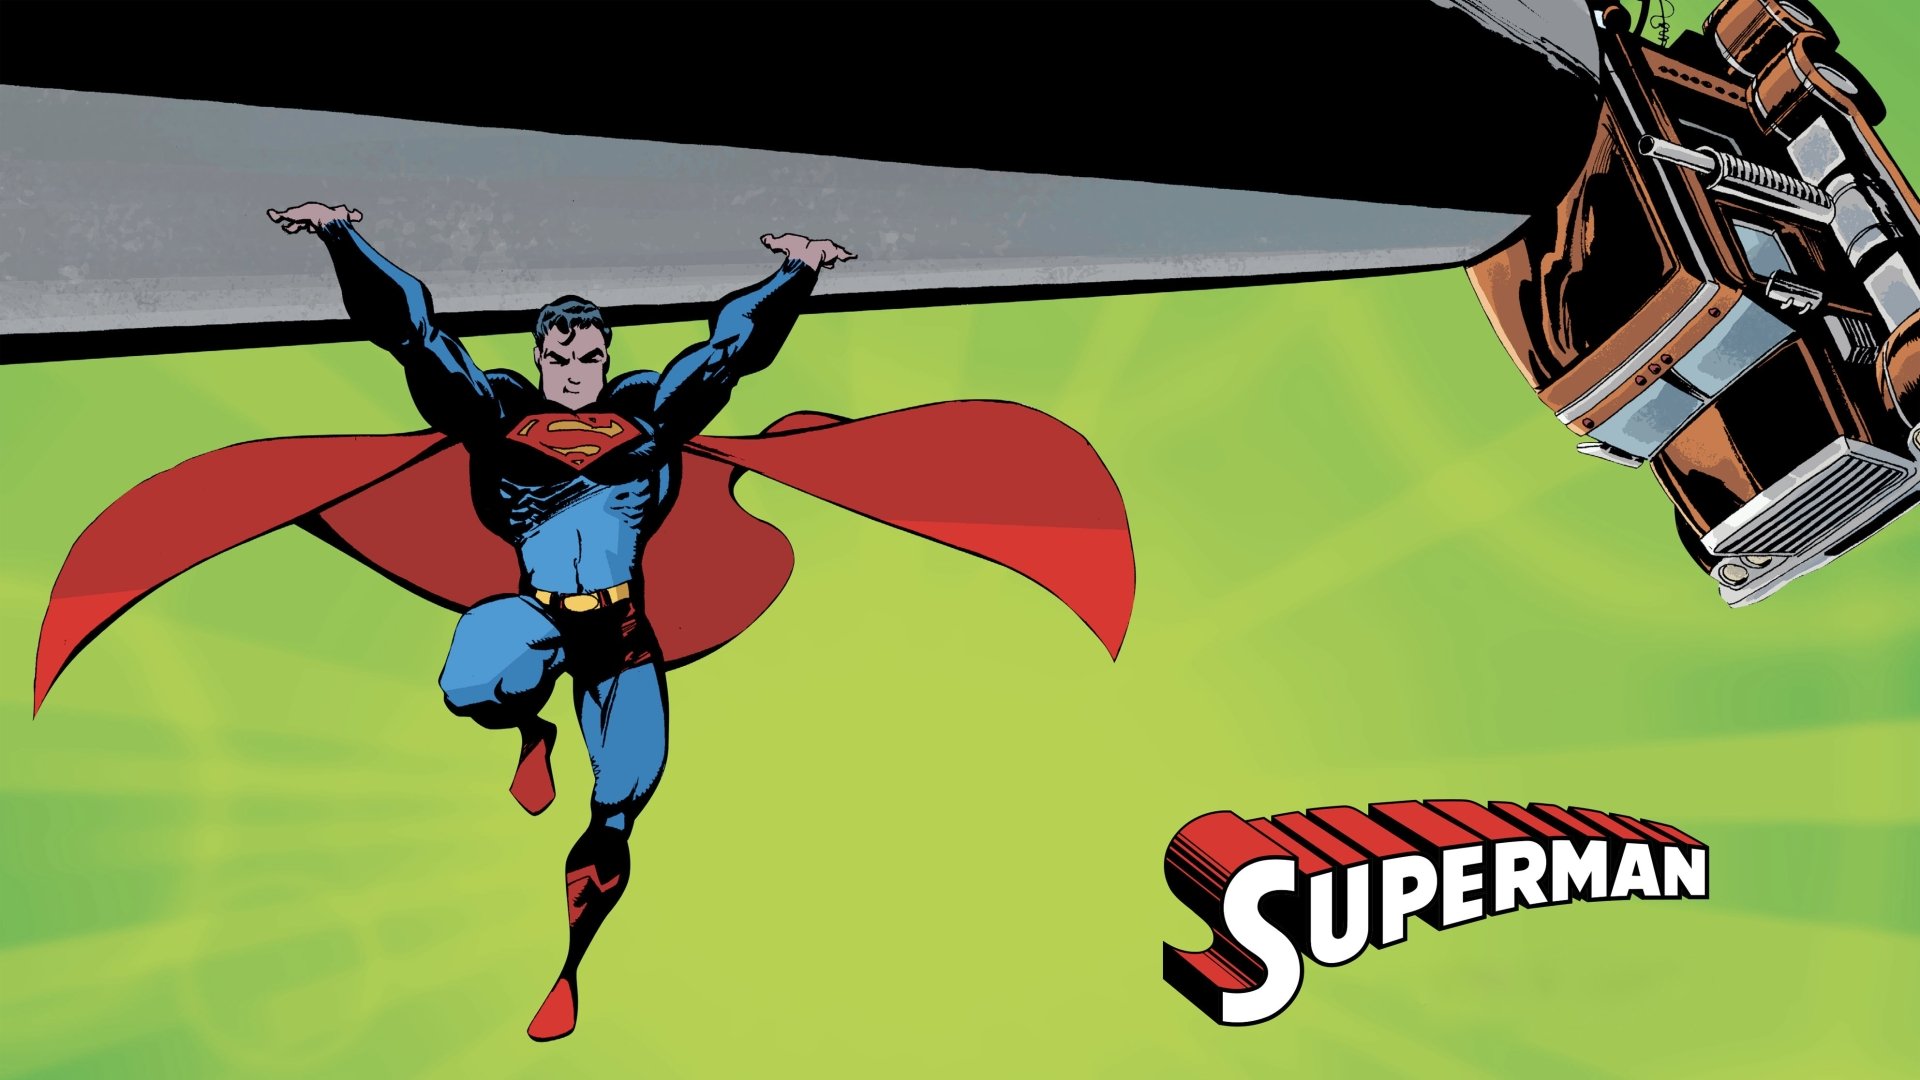 Supergirl vs evil supergirl image